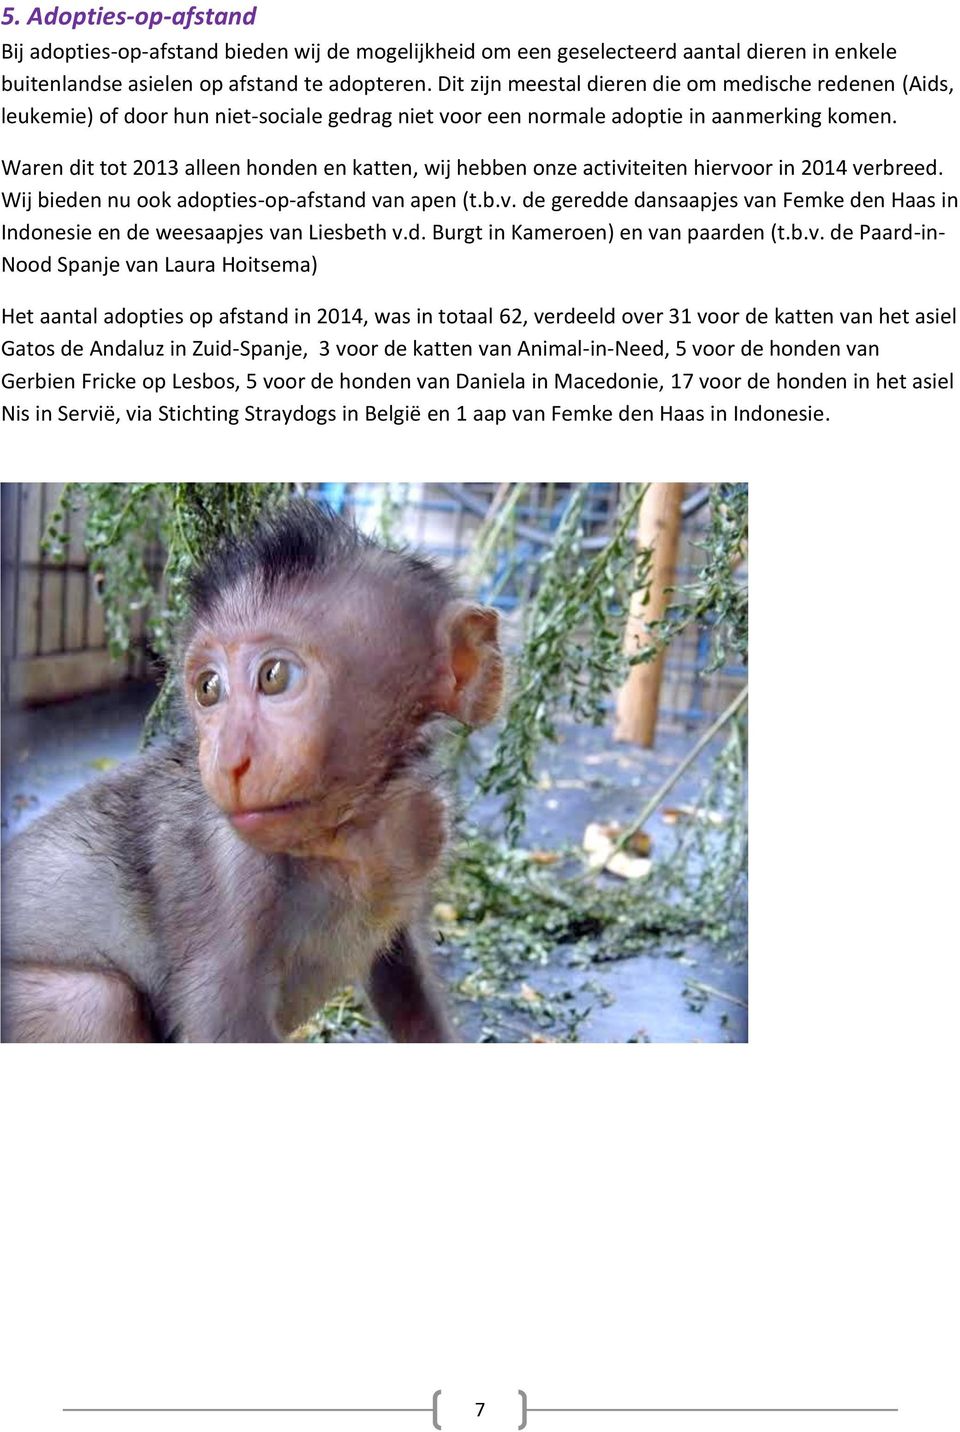 Waren dit tot 2013 alleen honden en katten, wij hebben onze activiteiten hiervoor in 2014 verbreed. Wij bieden nu ook adopties-op-afstand van apen (t.b.v. de geredde dansaapjes van Femke den Haas in Indonesie en de weesaapjes van Liesbeth v.